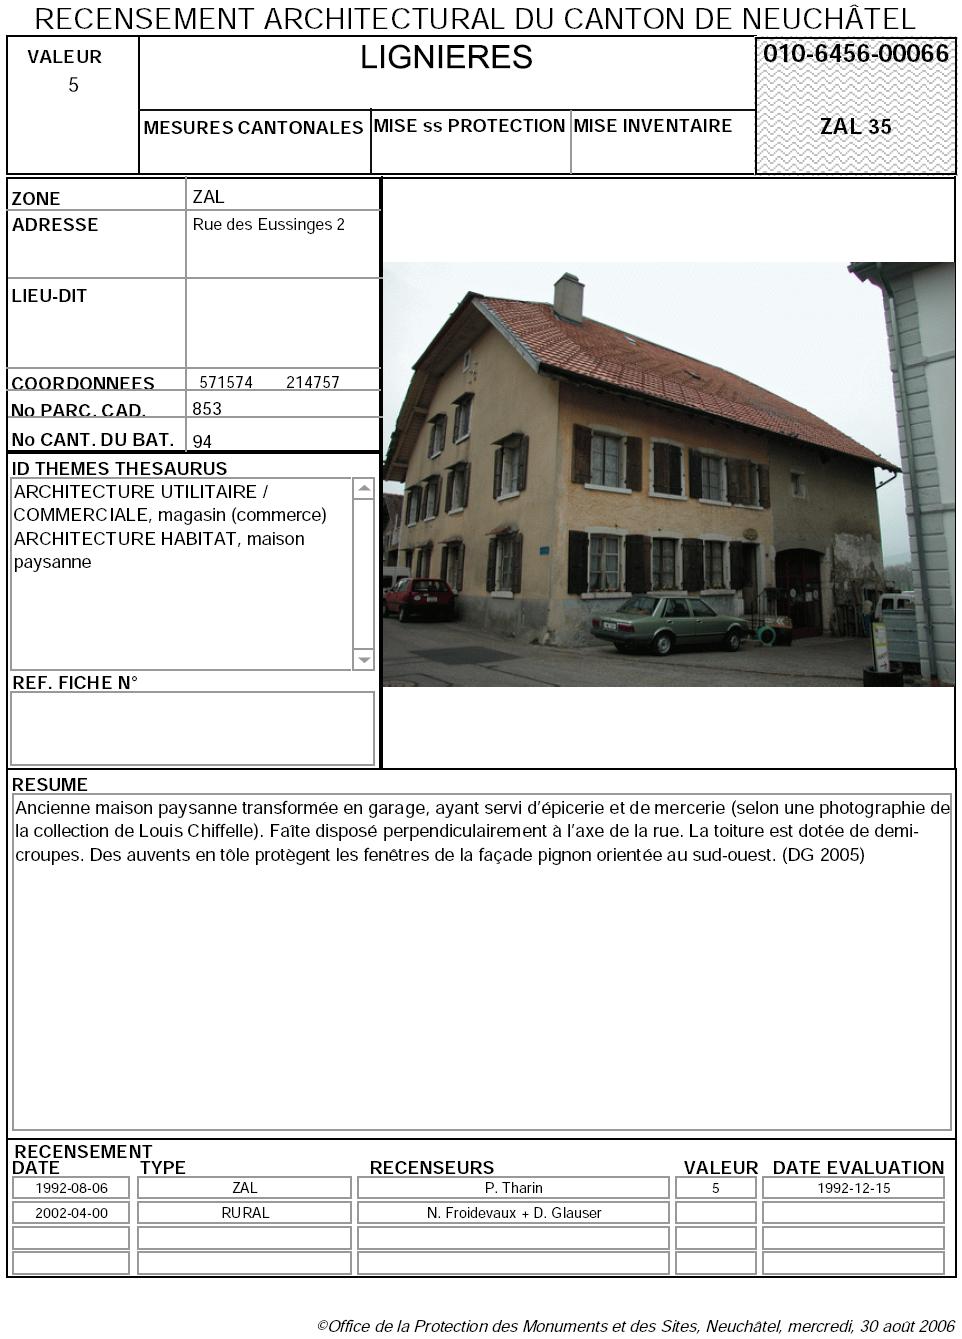 Recensement architectural du canton de Neuchâtel: Fiche 010-6456-00066